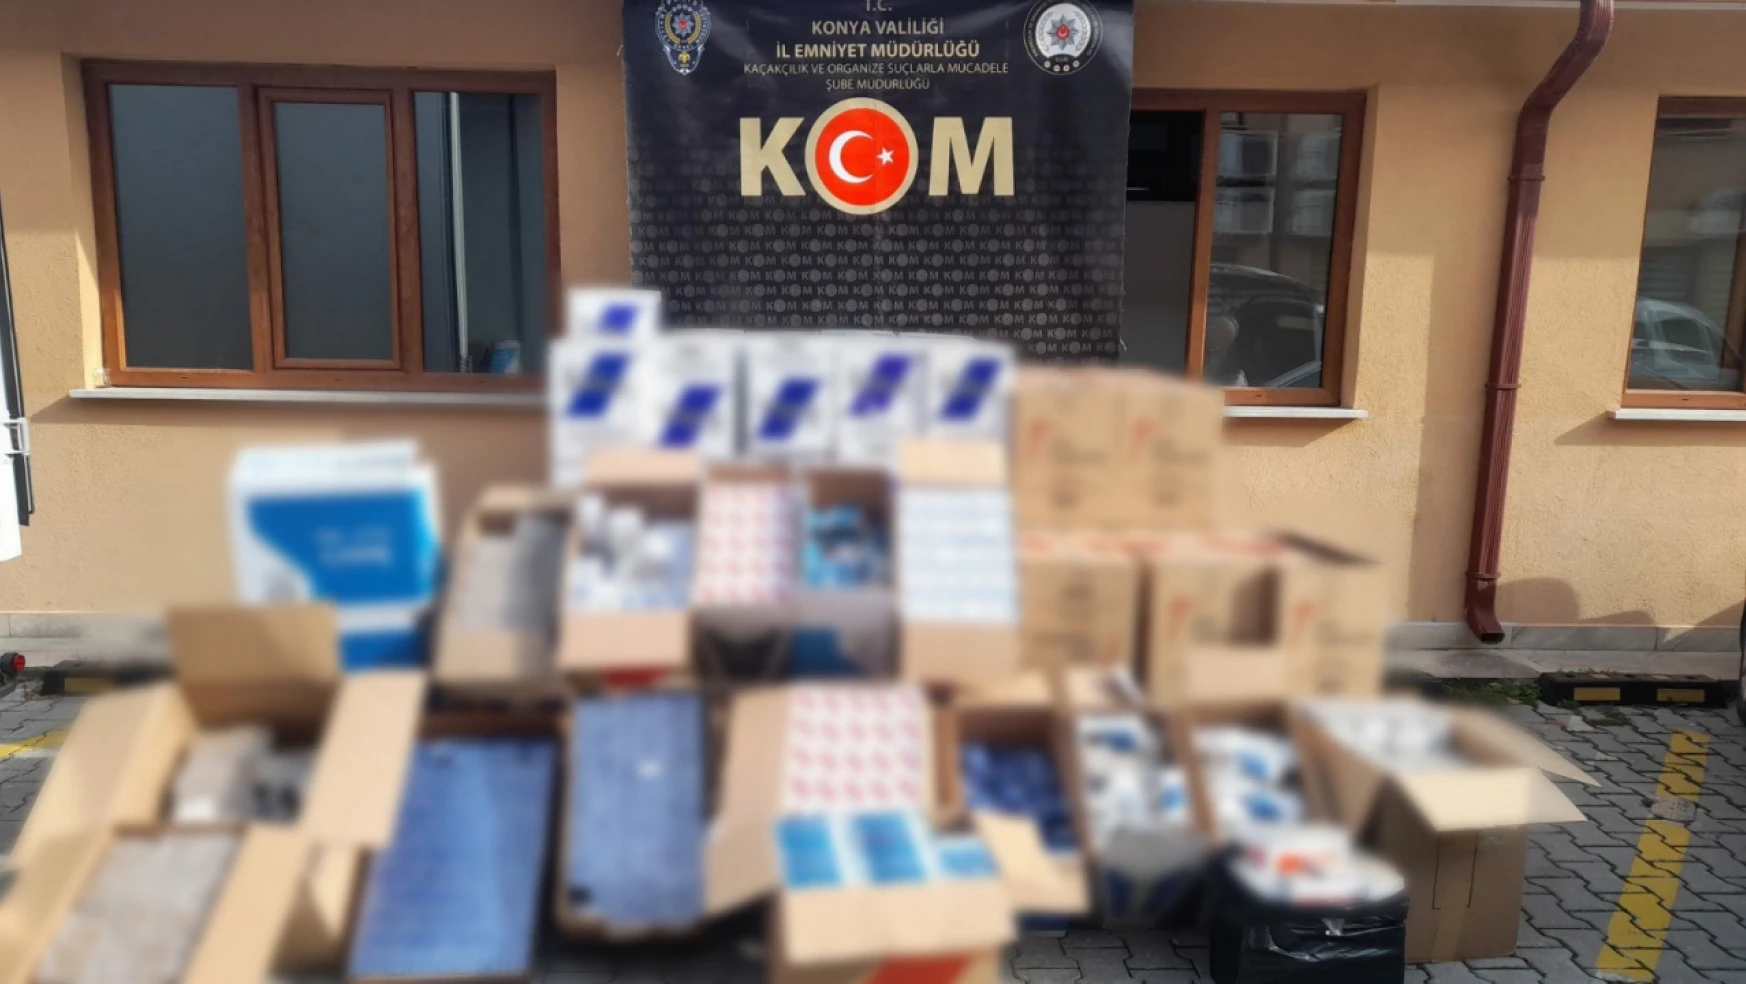 Konya'nın merkez ilçelerine operasyon: Piyasa değeri 3 milyon TL olan kaçak ürünler ele geçirildi!